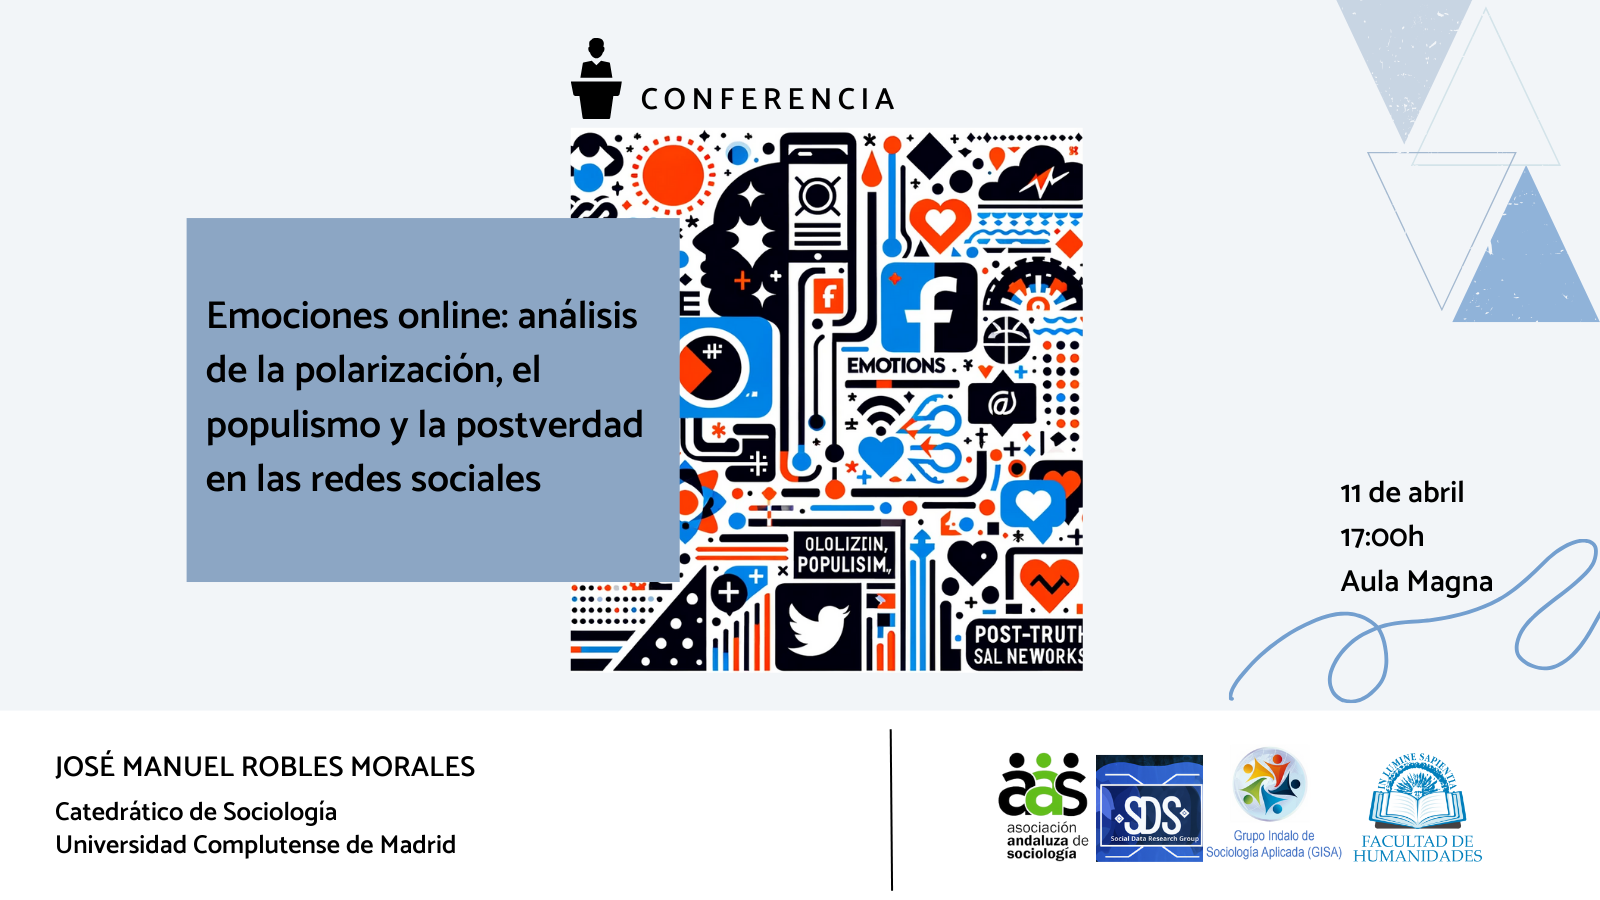 La Facultad de Humanidades y Juan Sebastián Fernández Prados organizan la conferencia: «Emociones online: análisis de la polarización, el populismo y la postverdad en las redes sociales».